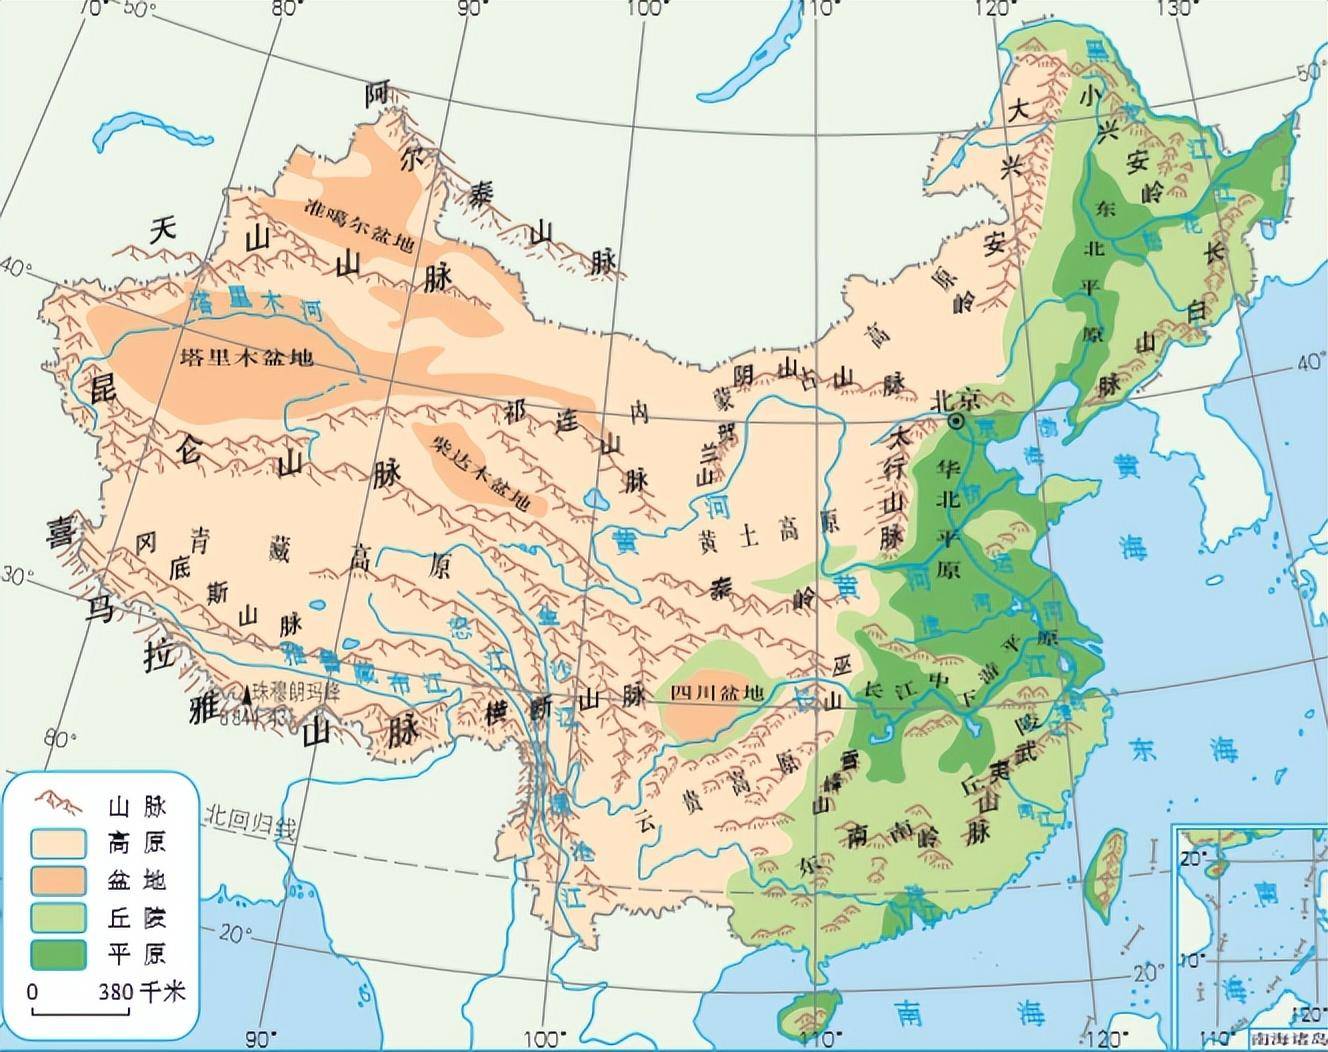 四川盆地和长江中下游平原的界线黄土高原和华北平原则依次构成了